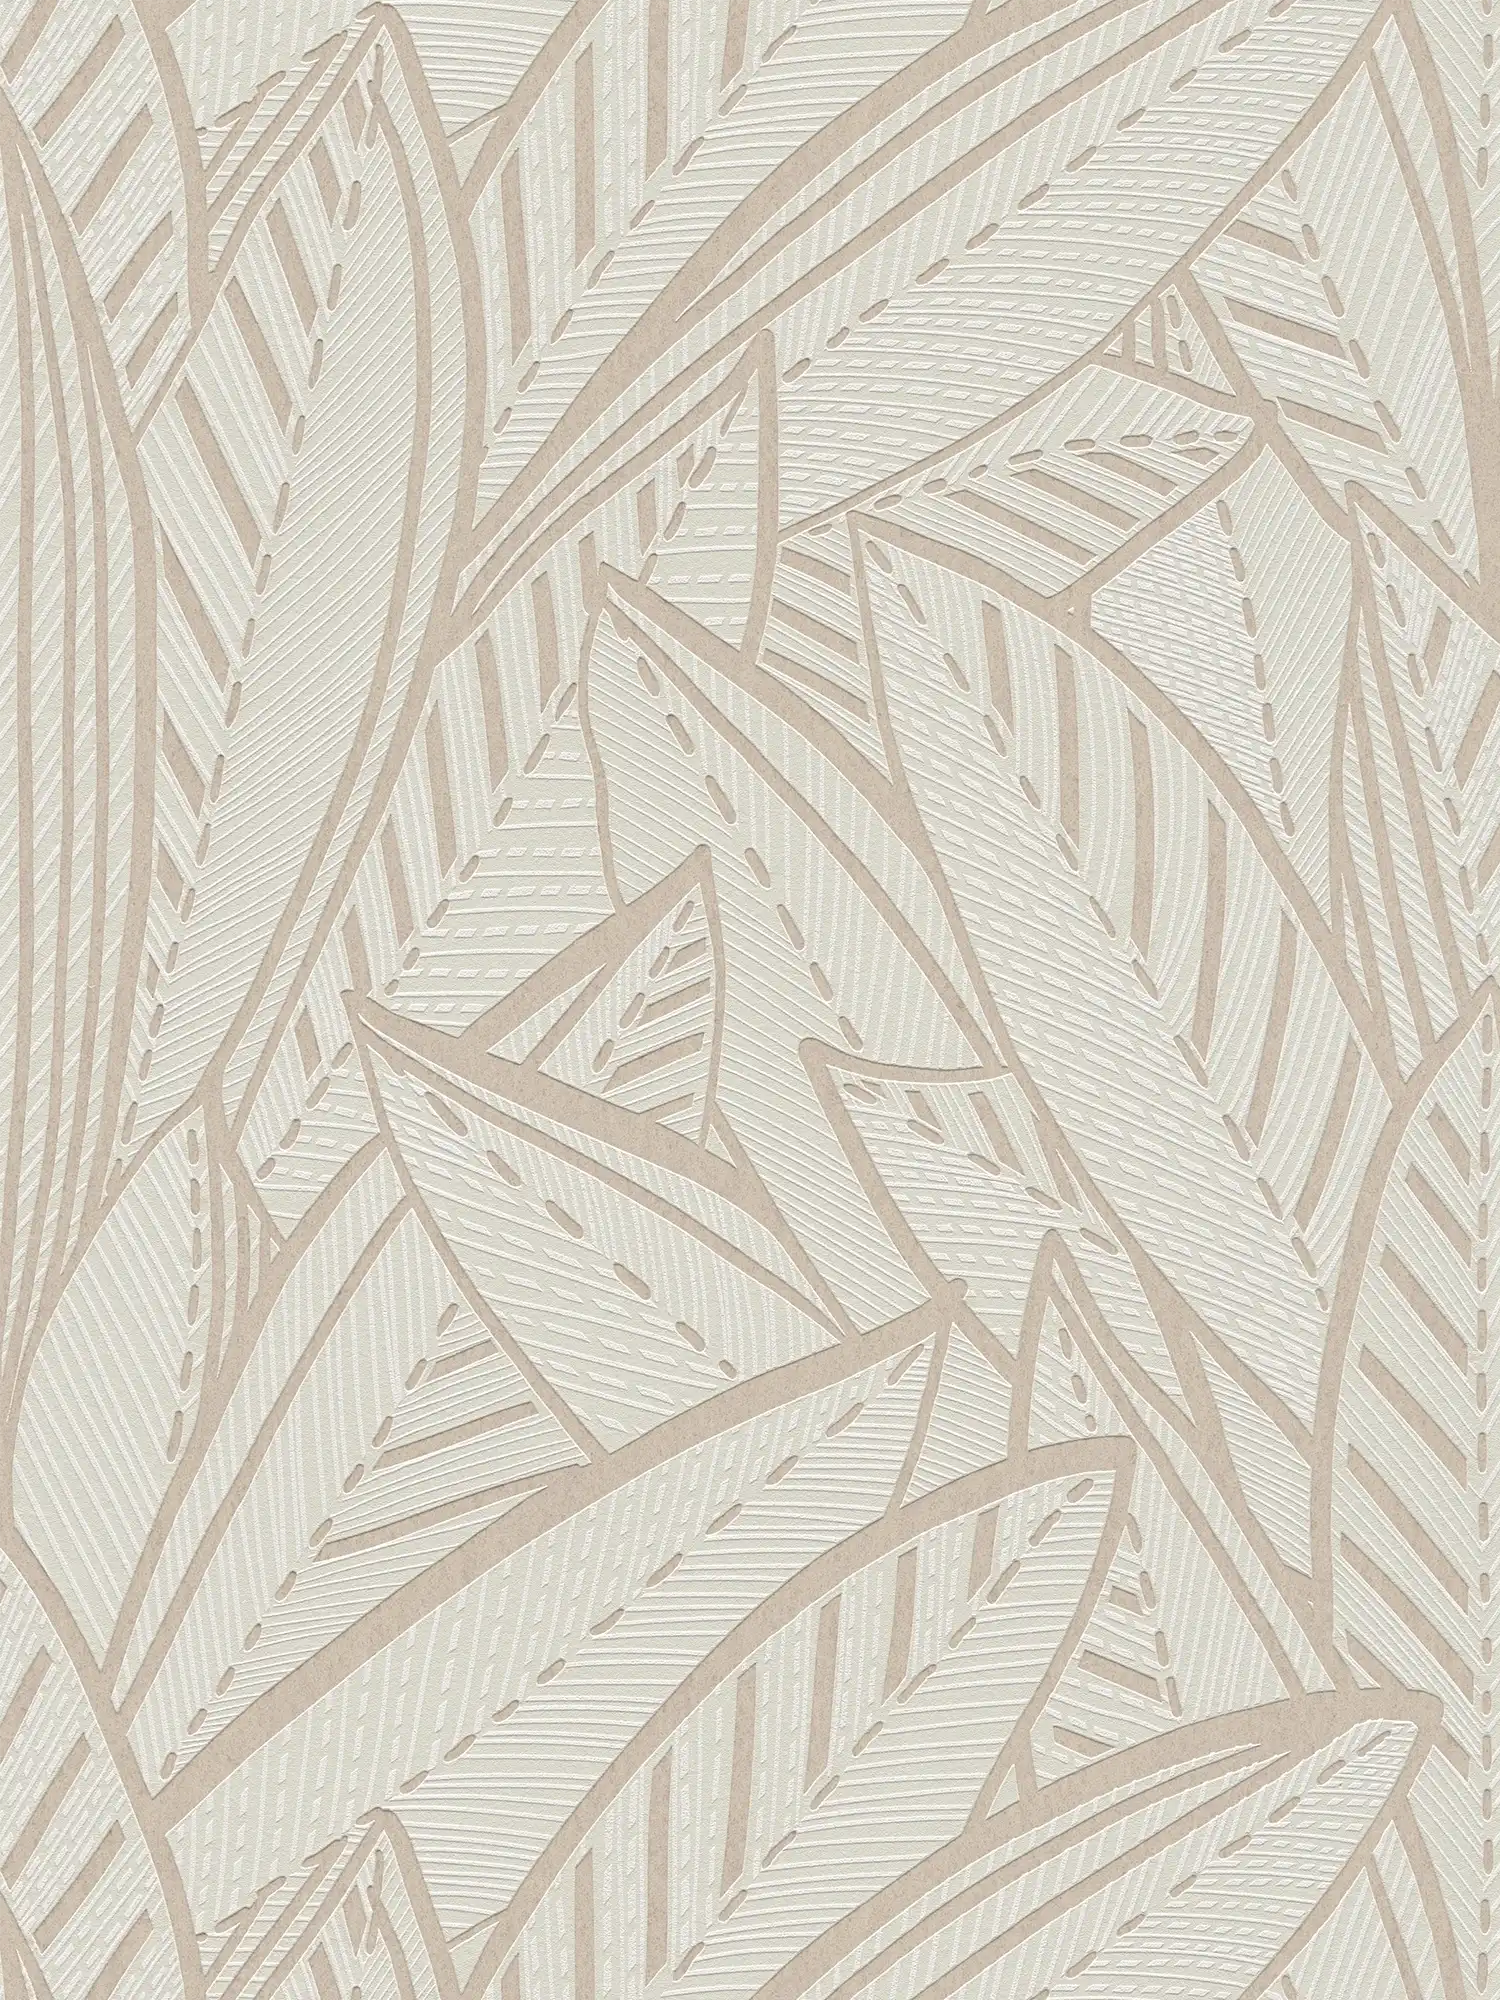 Dschungel Vliestapete mit Palmenblättern und leichten Glanzeffekten – Weiß, Grau
